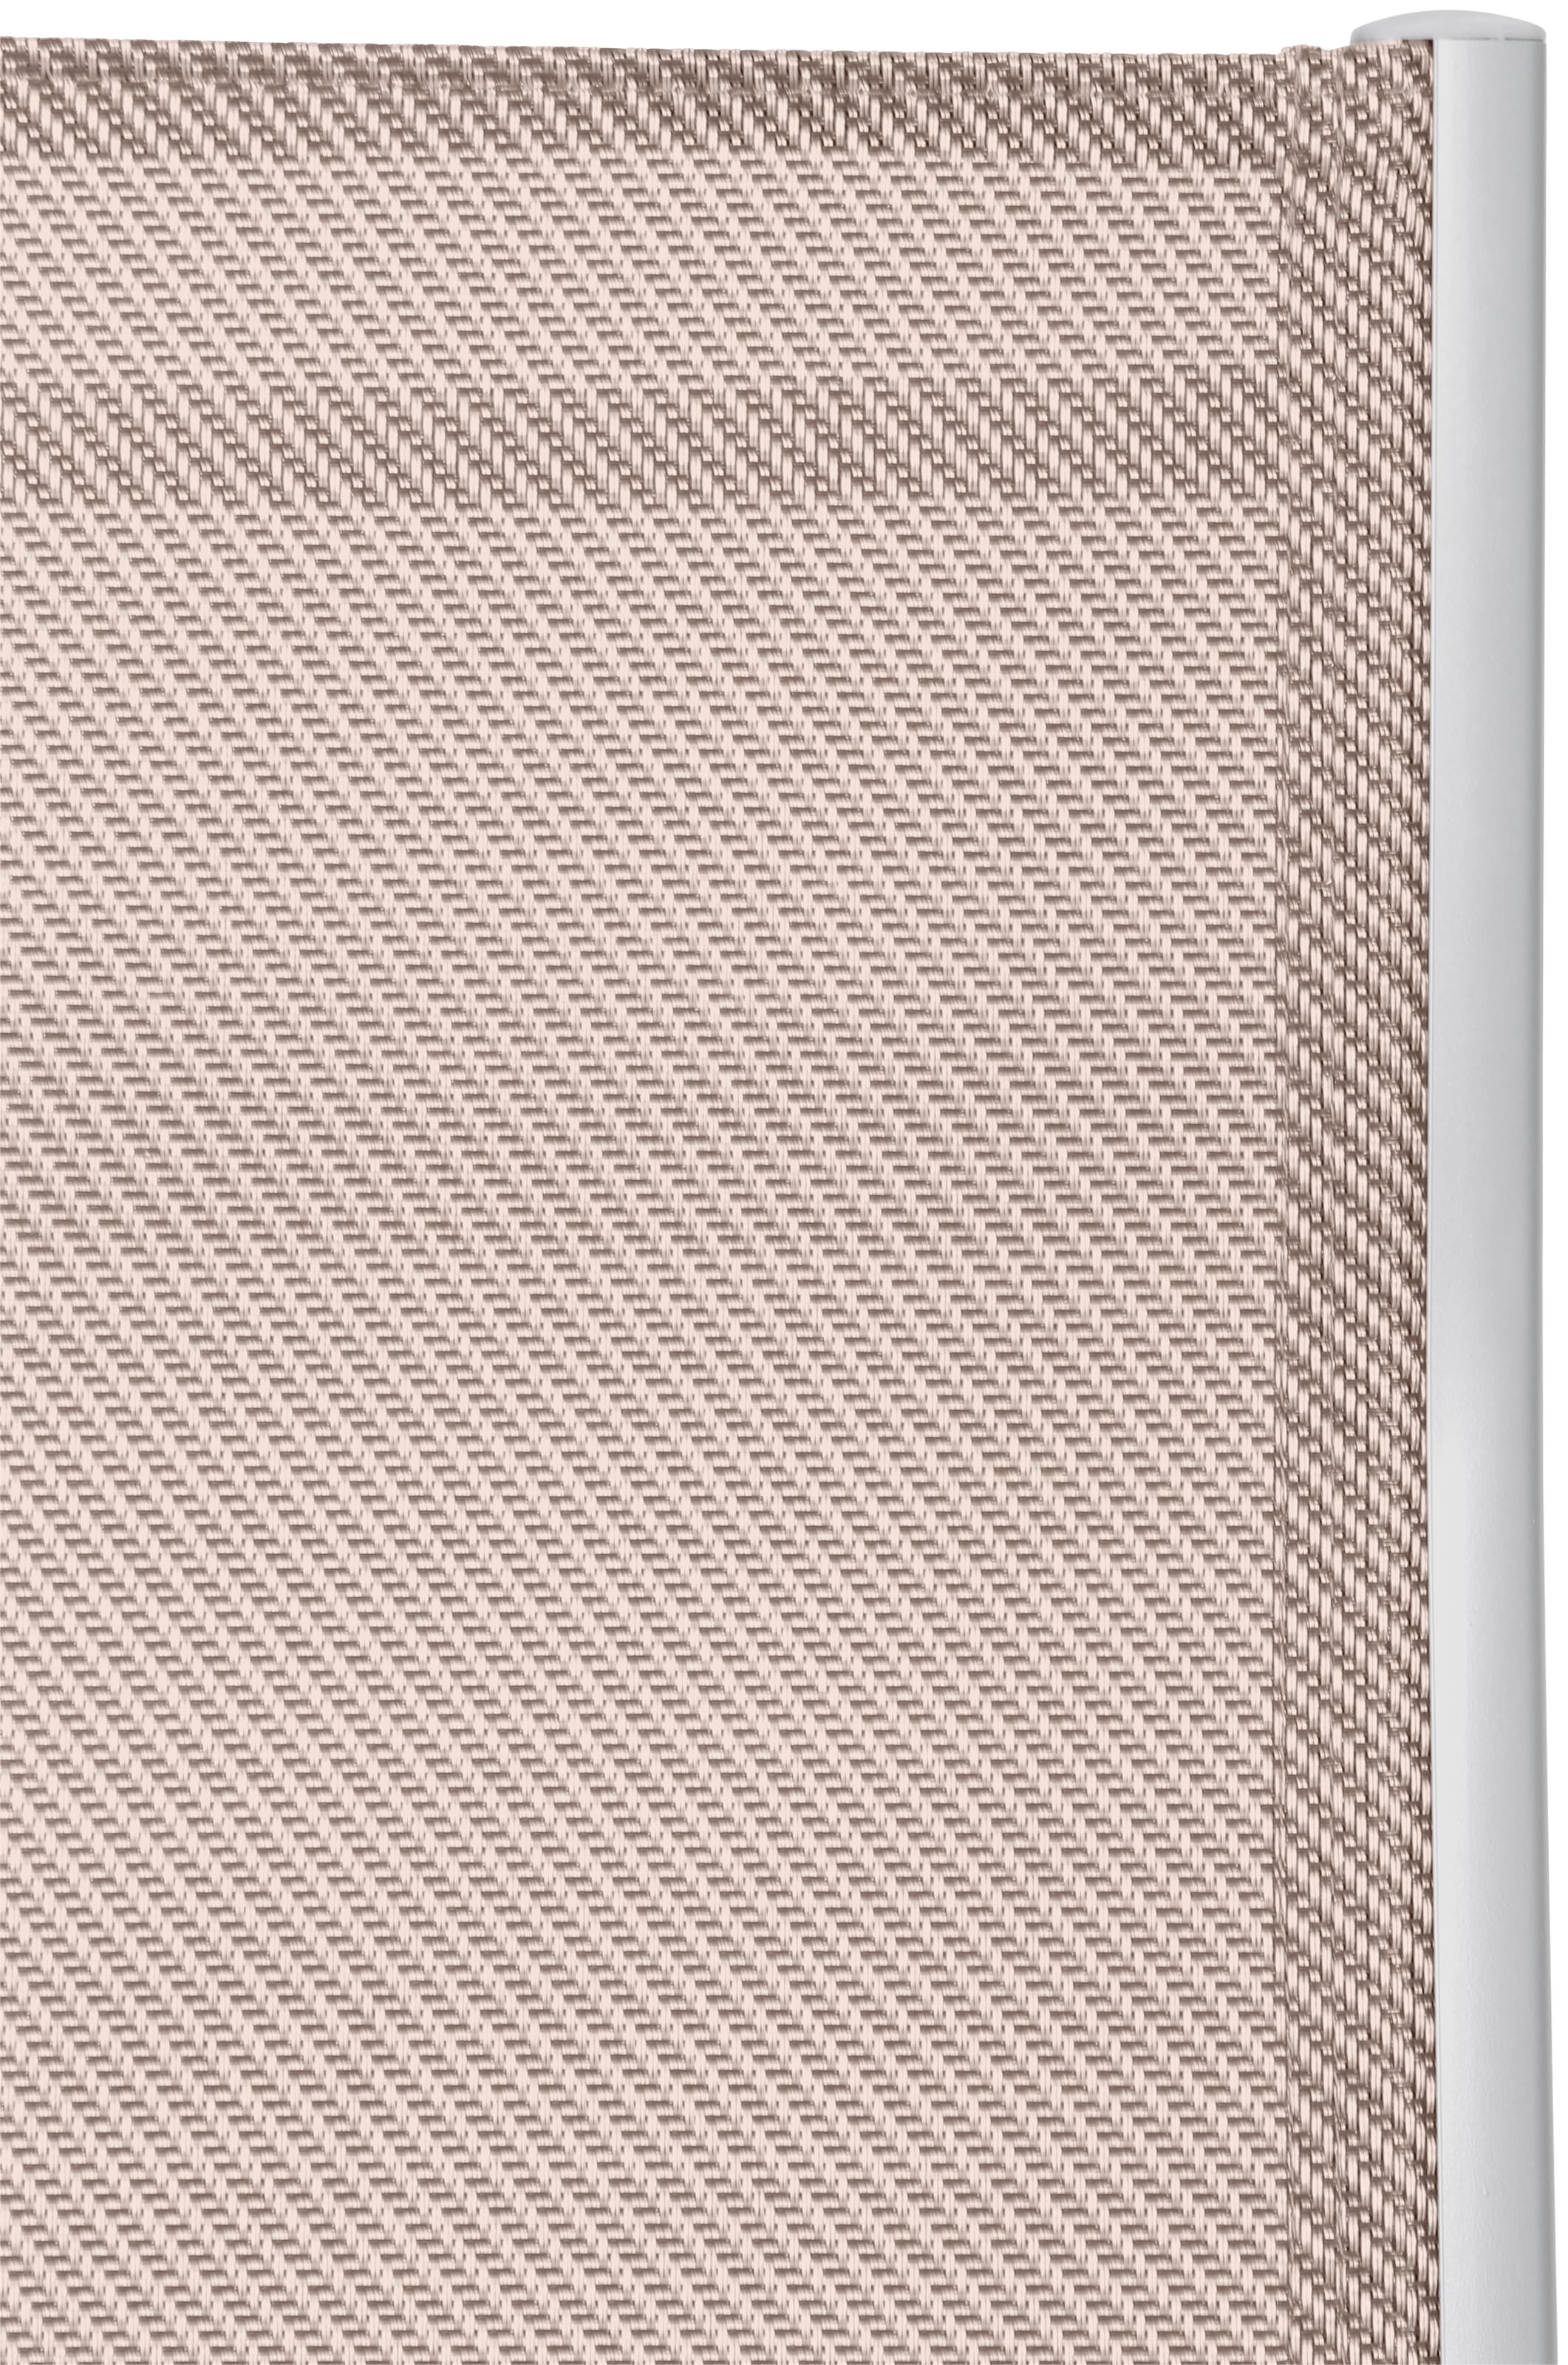 MERXX Garten-Essgruppe »Amalfi«, (5 tlg.), 4 Klappsessel, Tisch ausziehbar 90x120-180 cm, Alu/Textil